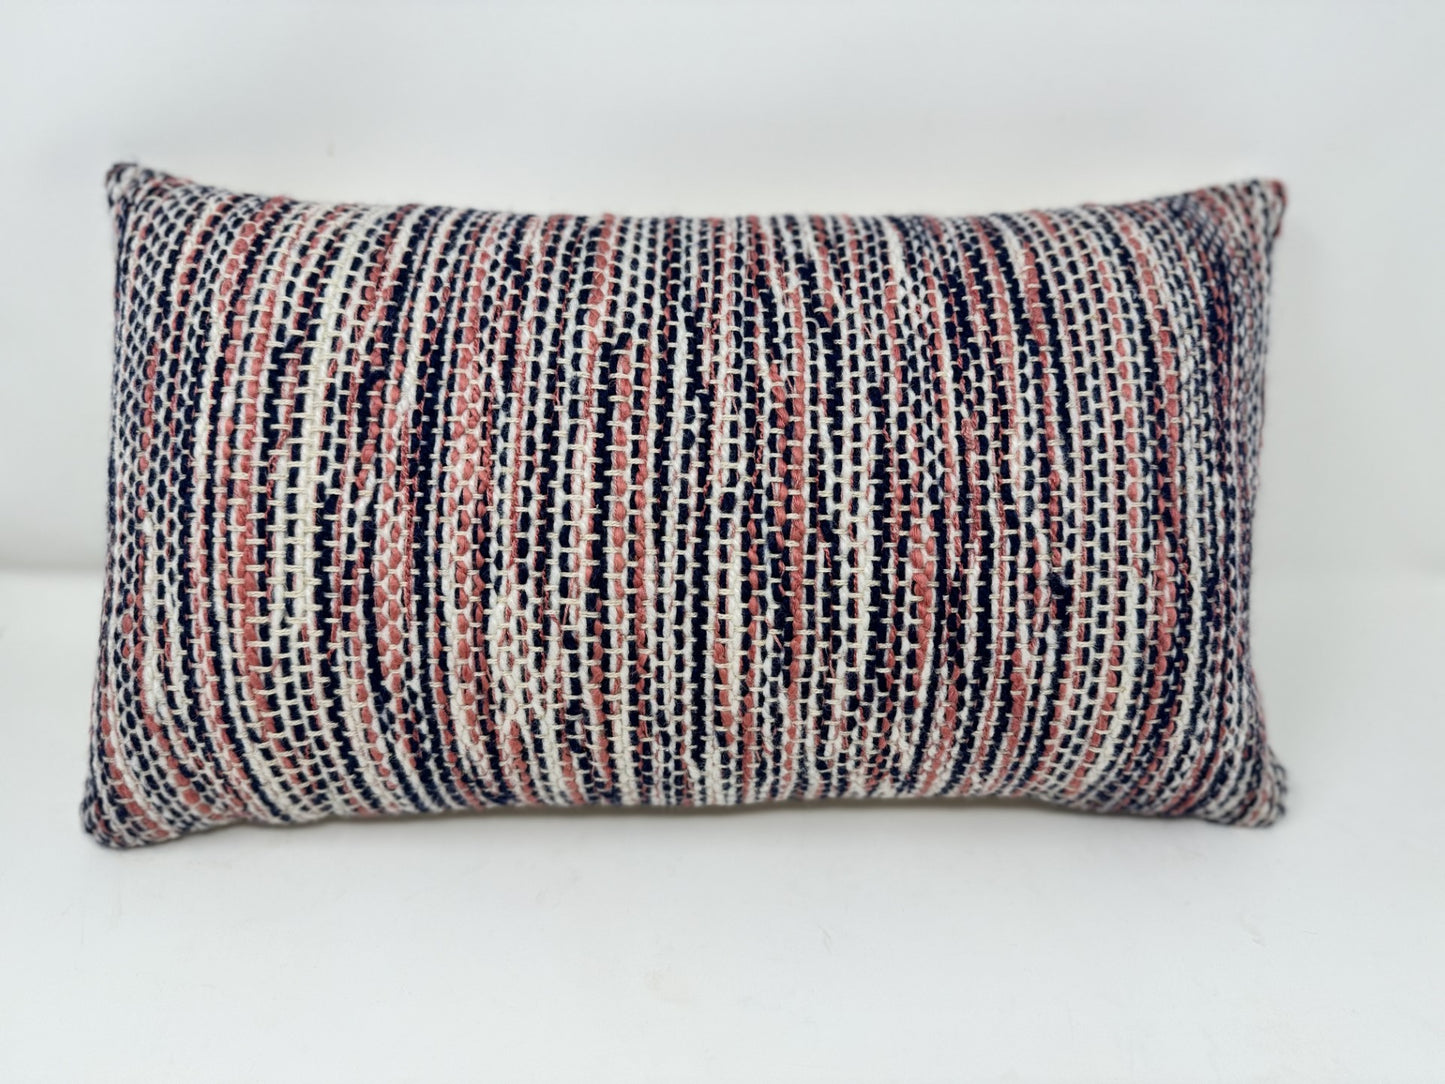 Hand-woven Cushion